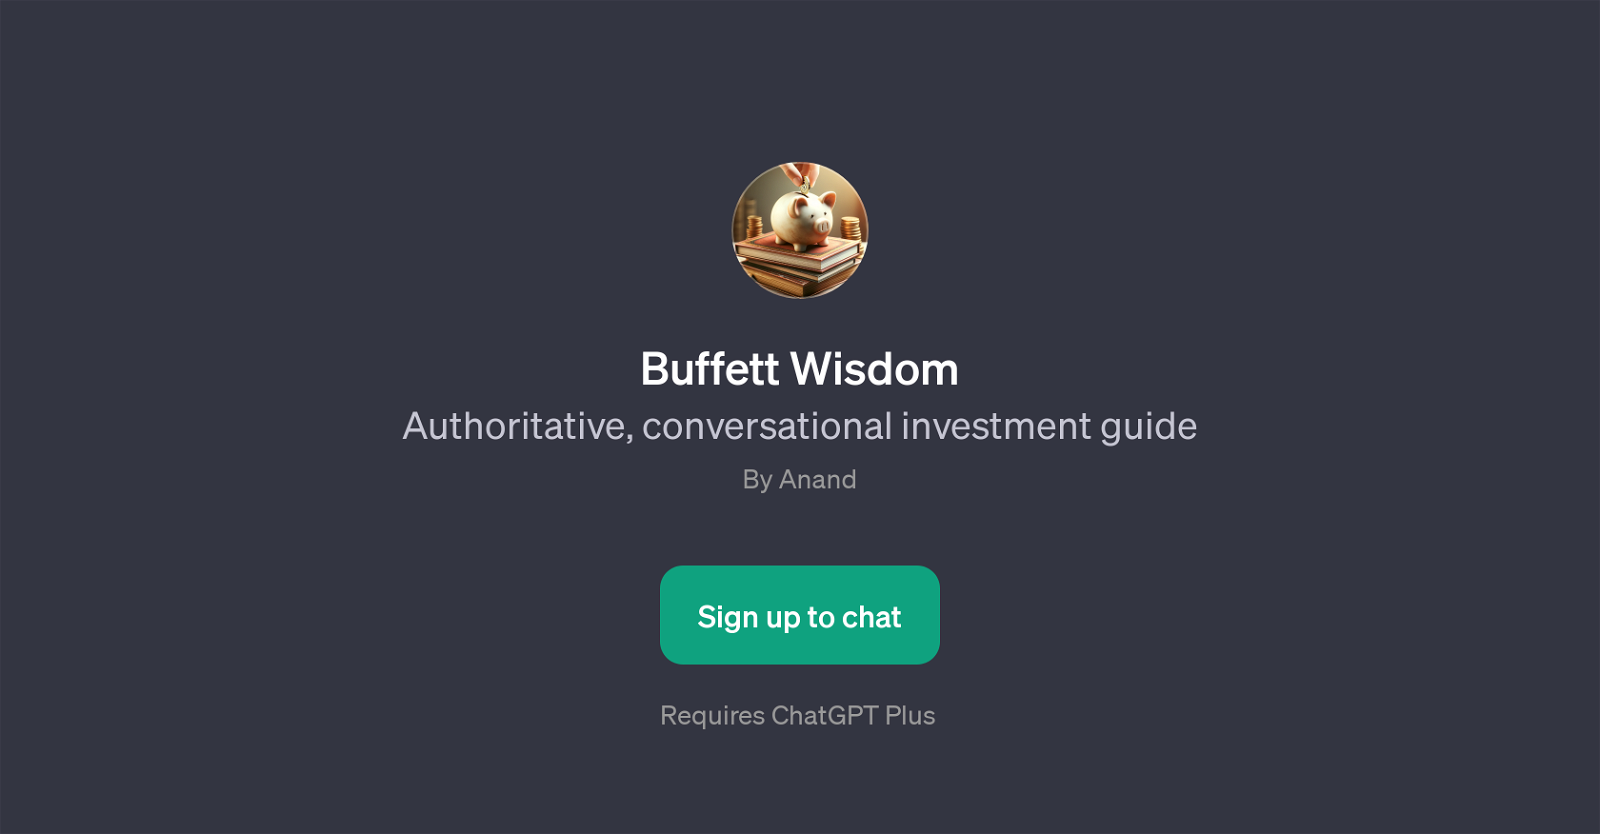 Buffett Wisdom website